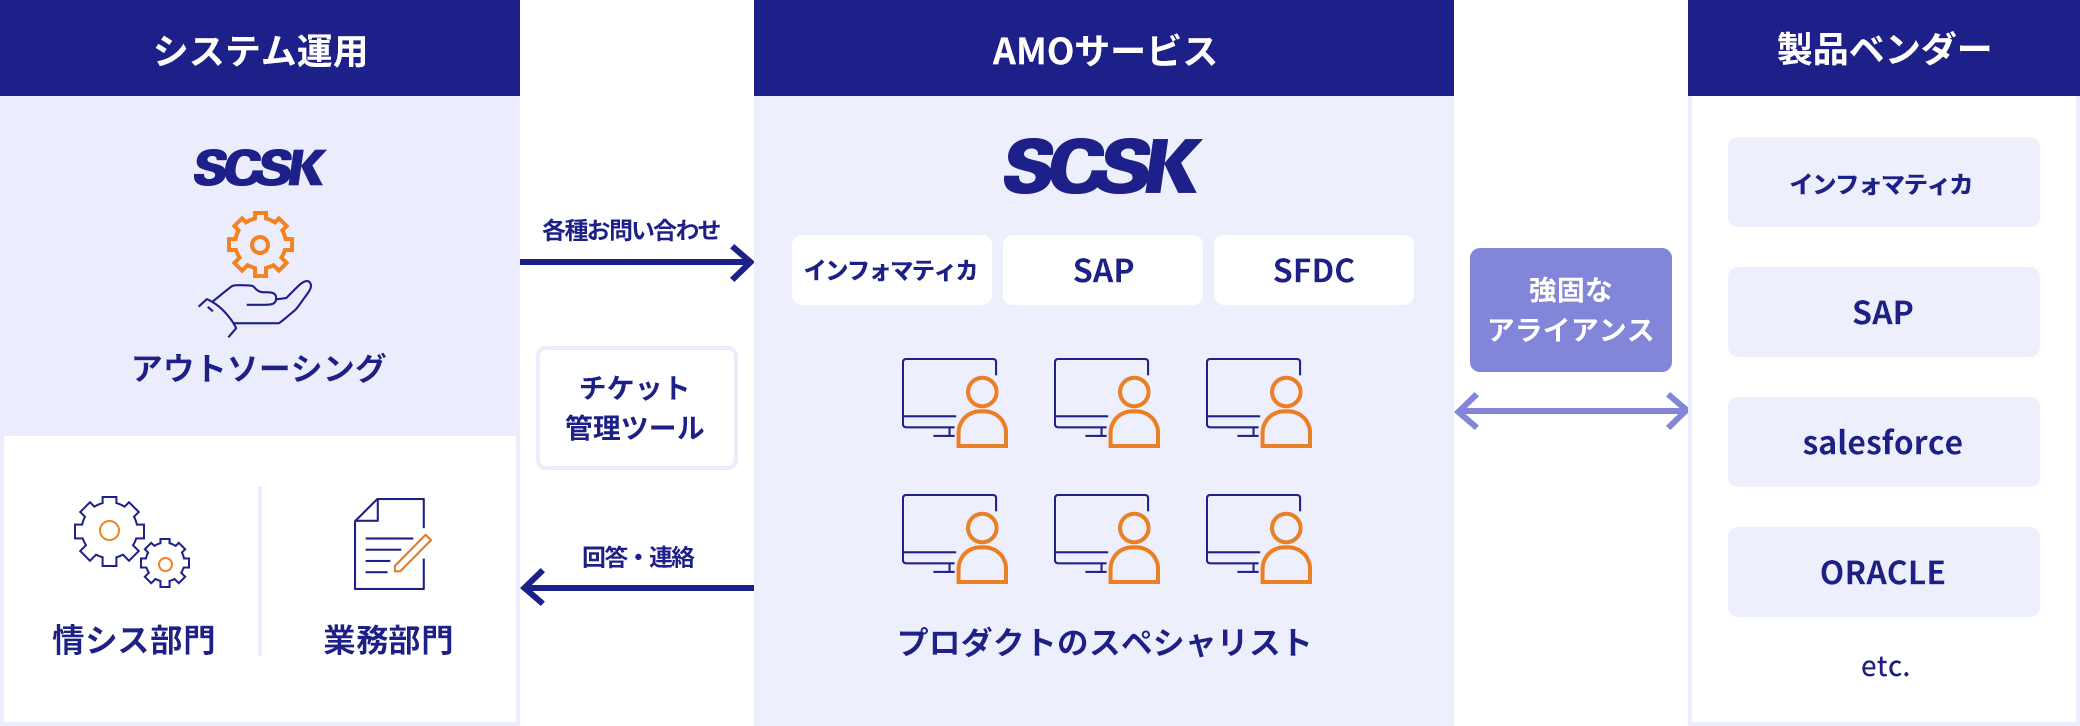 システム運用 SCSK アウトソーシング 情シス部門 業務部門 各種お問合せ チケット管理ツール 回答・連絡 AMOサービス プロダクトのスペシャリスト 強固なアライアンス 製品ベンダー インフォマティカ SAP salesforce ORACLE etc.